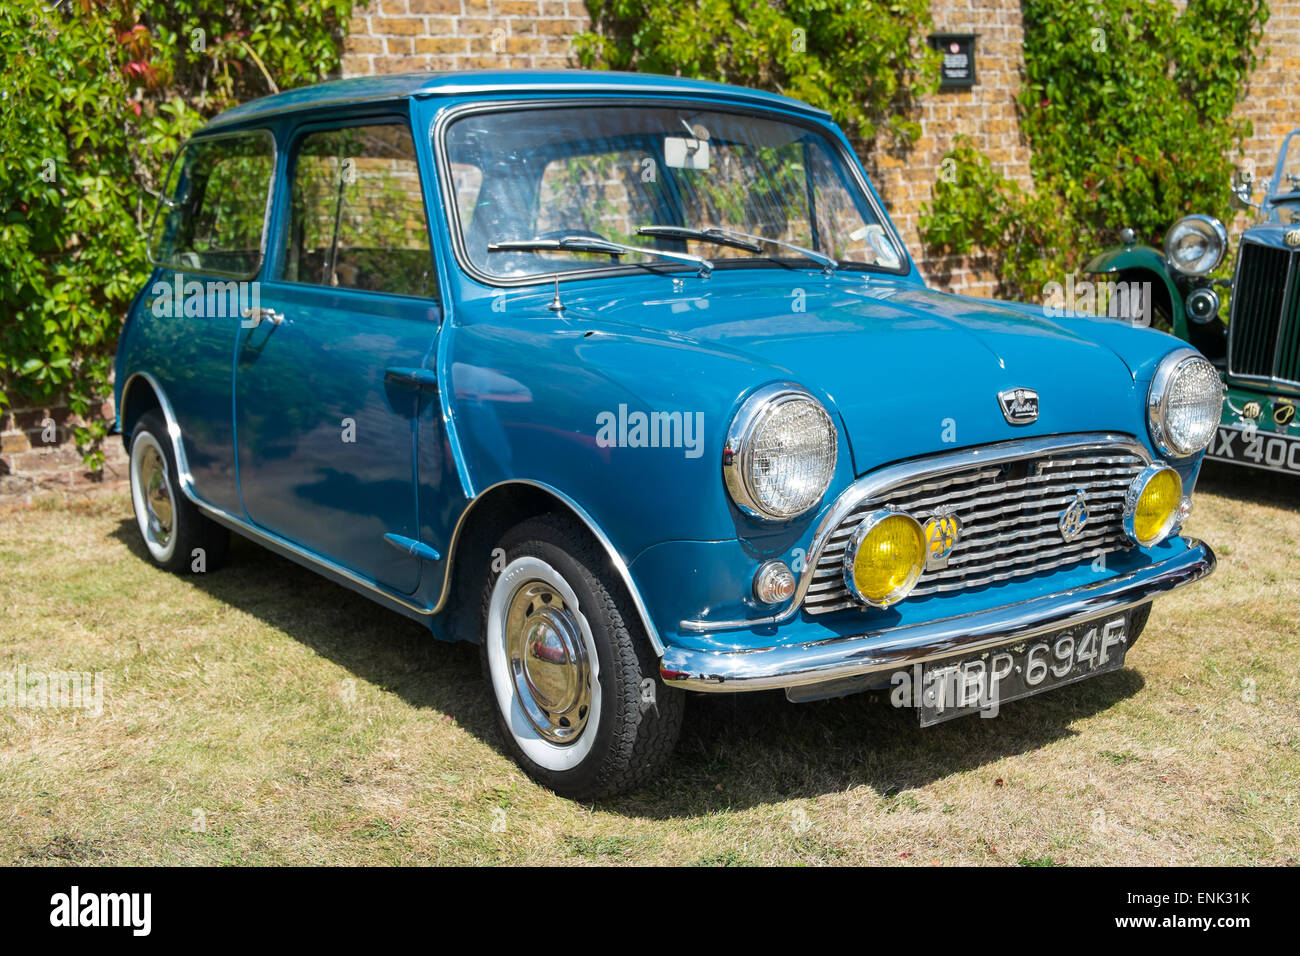 WINDSOR, Berkshire, UK- 3 août 2014 : un bleu classique Austin Mini sur show à un salon de voitures en août 2013. Banque D'Images